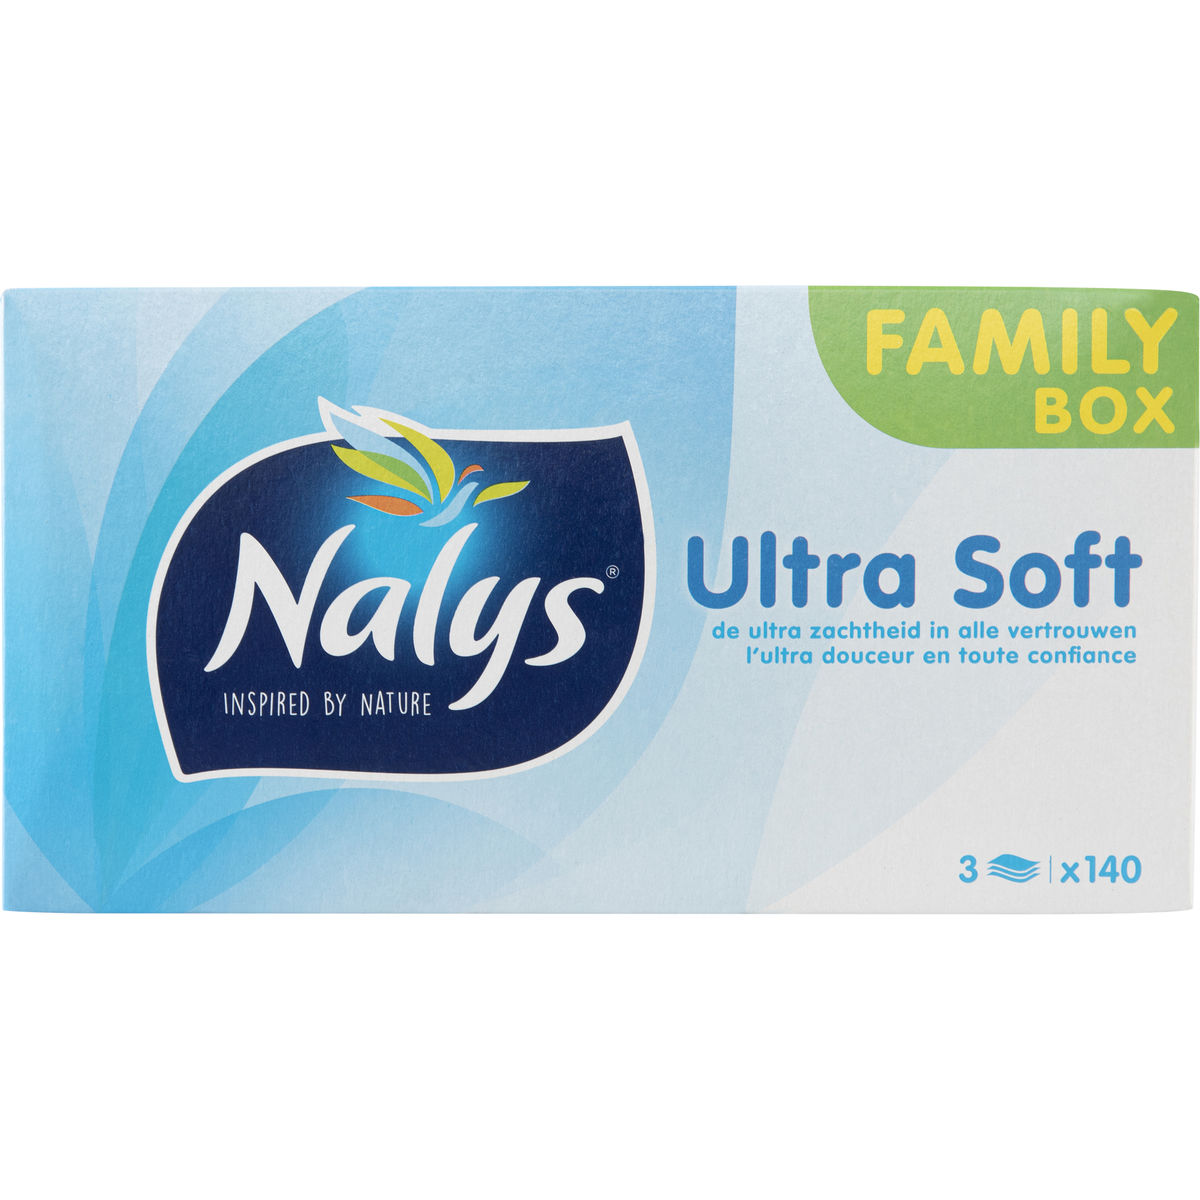 Nalys Ultra Soft Family Box 3 Épaisseurs 140 Pièces